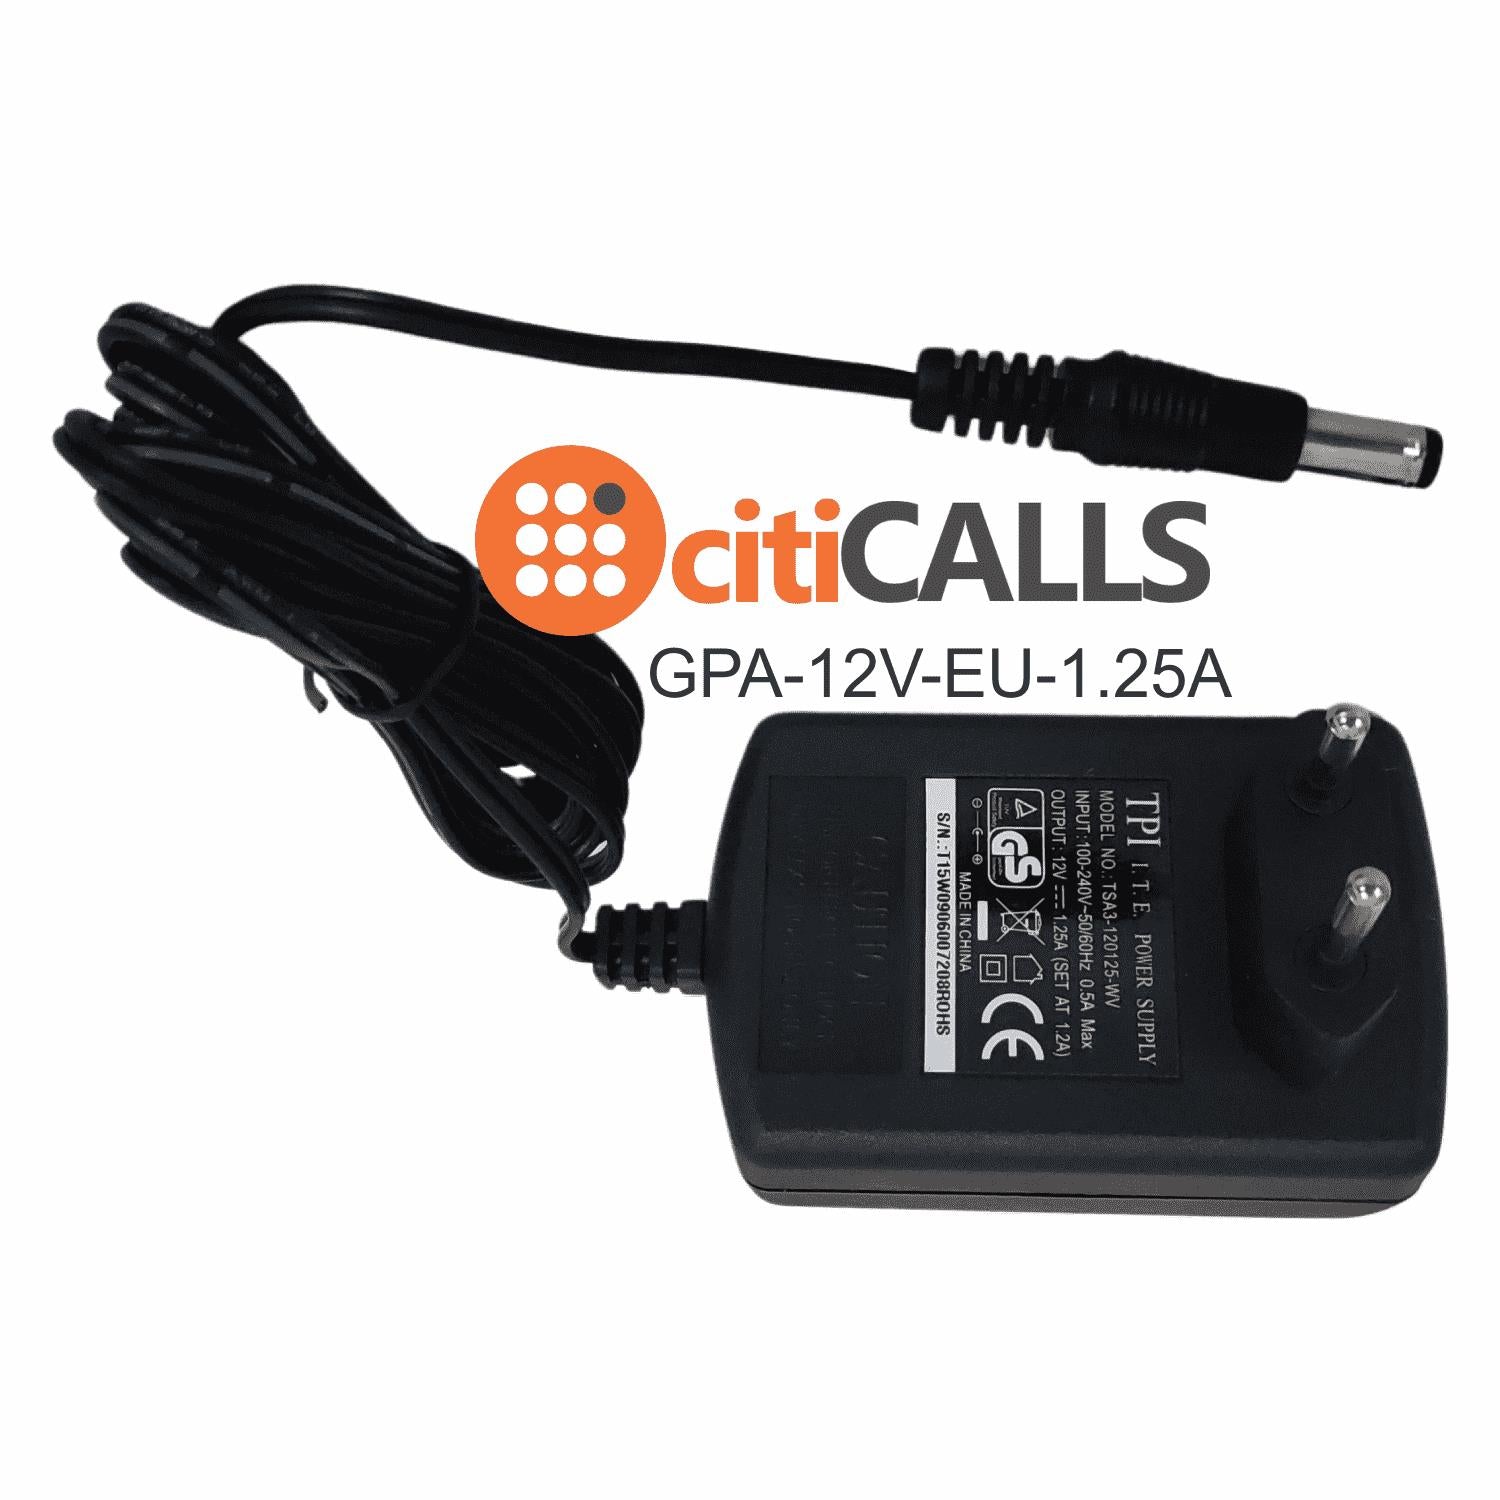 CHN Power Adapter 12V 1.25A EU Europe PLUG 100-240V for Grandstream Yealink